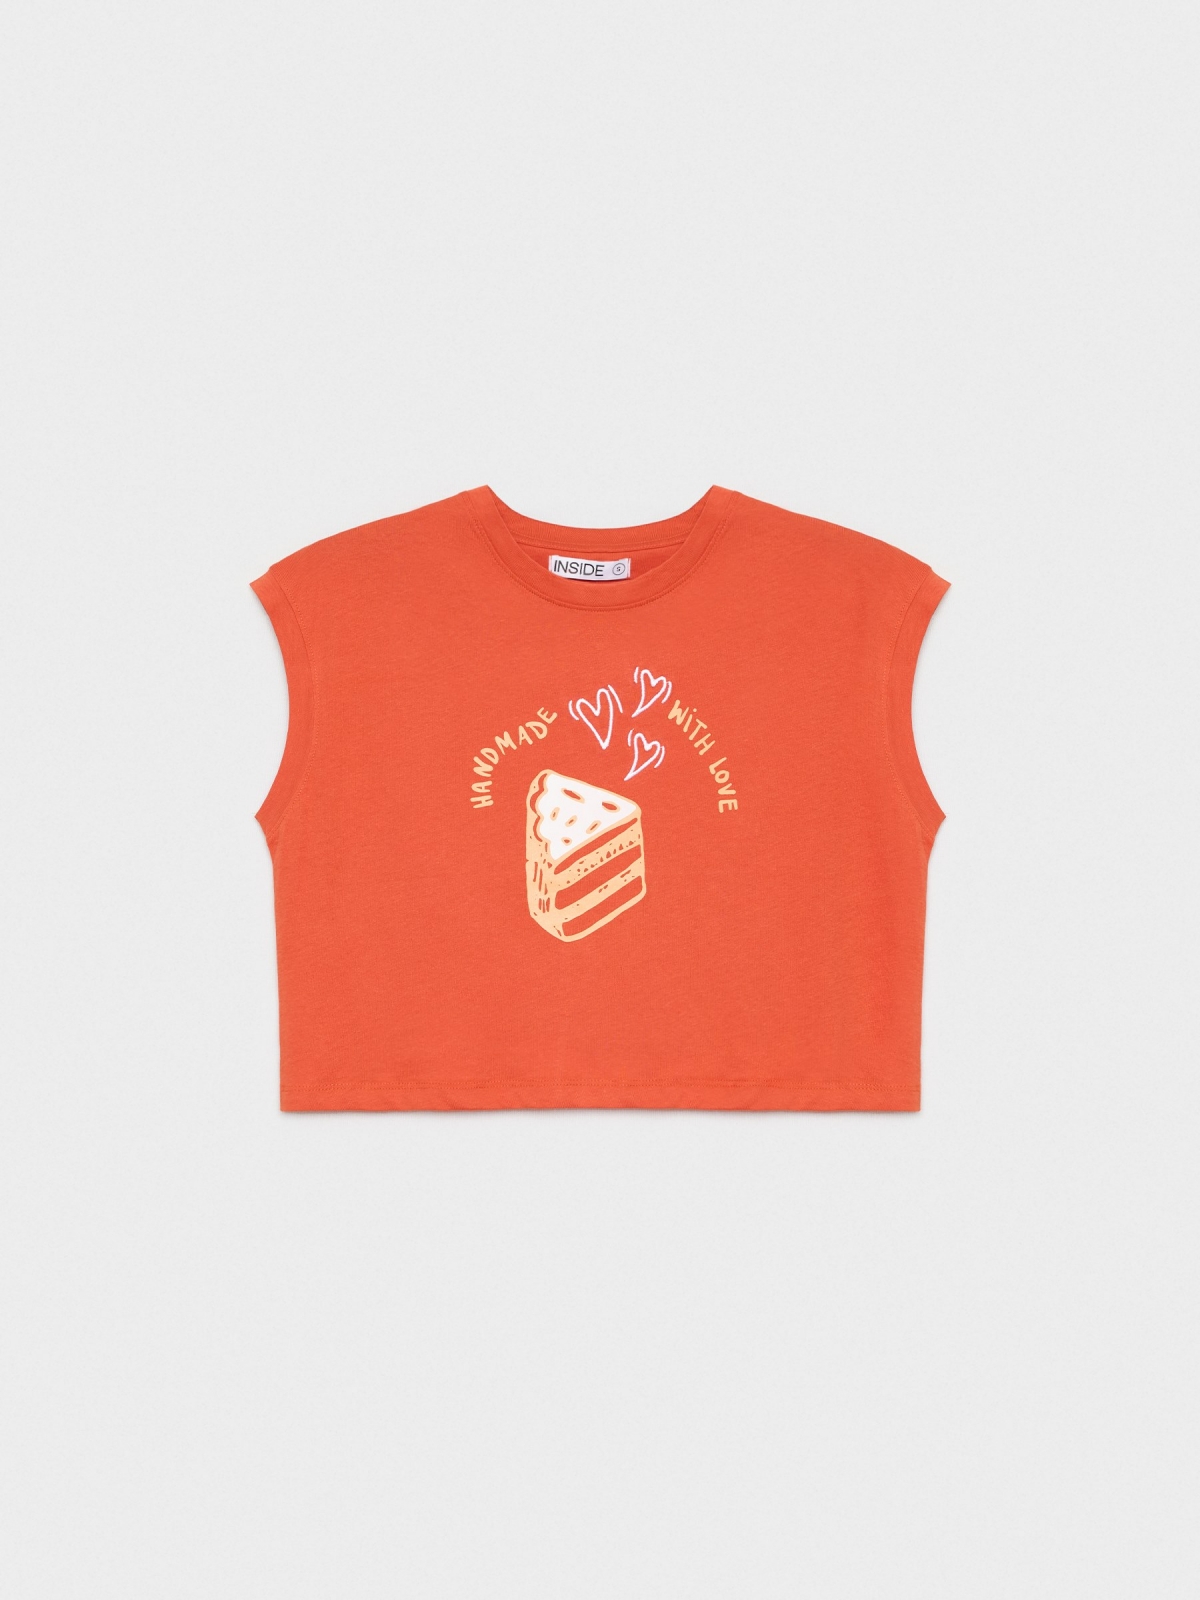  Camiseta naranja gráfico teja